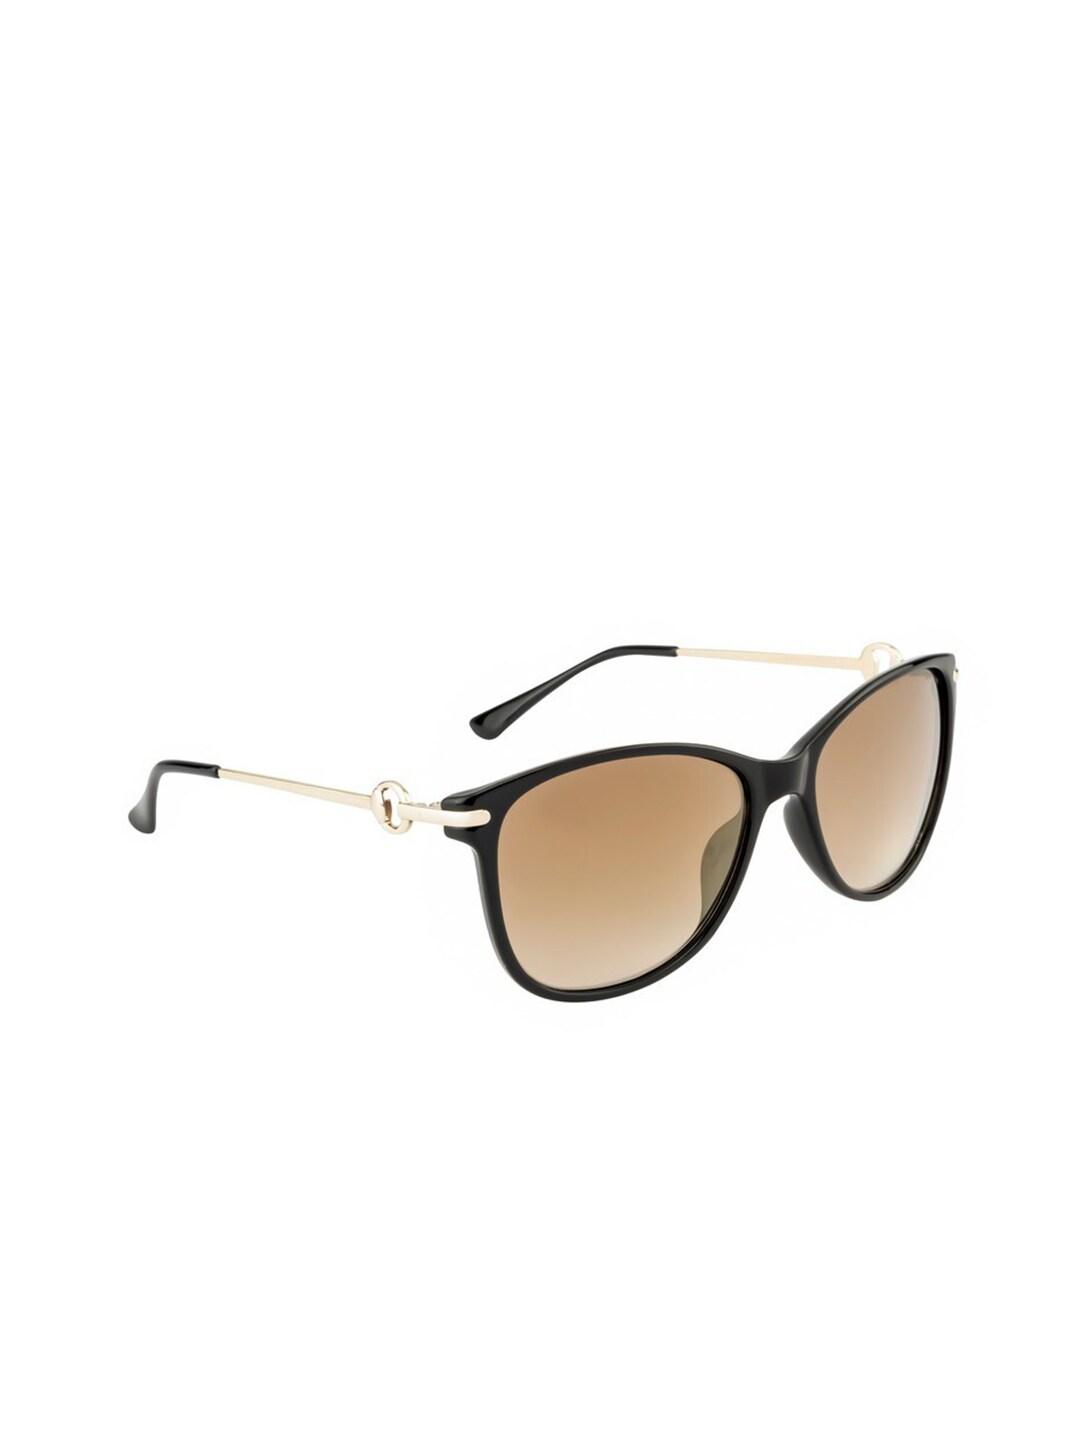 OPIUM Women Gold Lens & Black Square UV Protected Lens Sunglasses